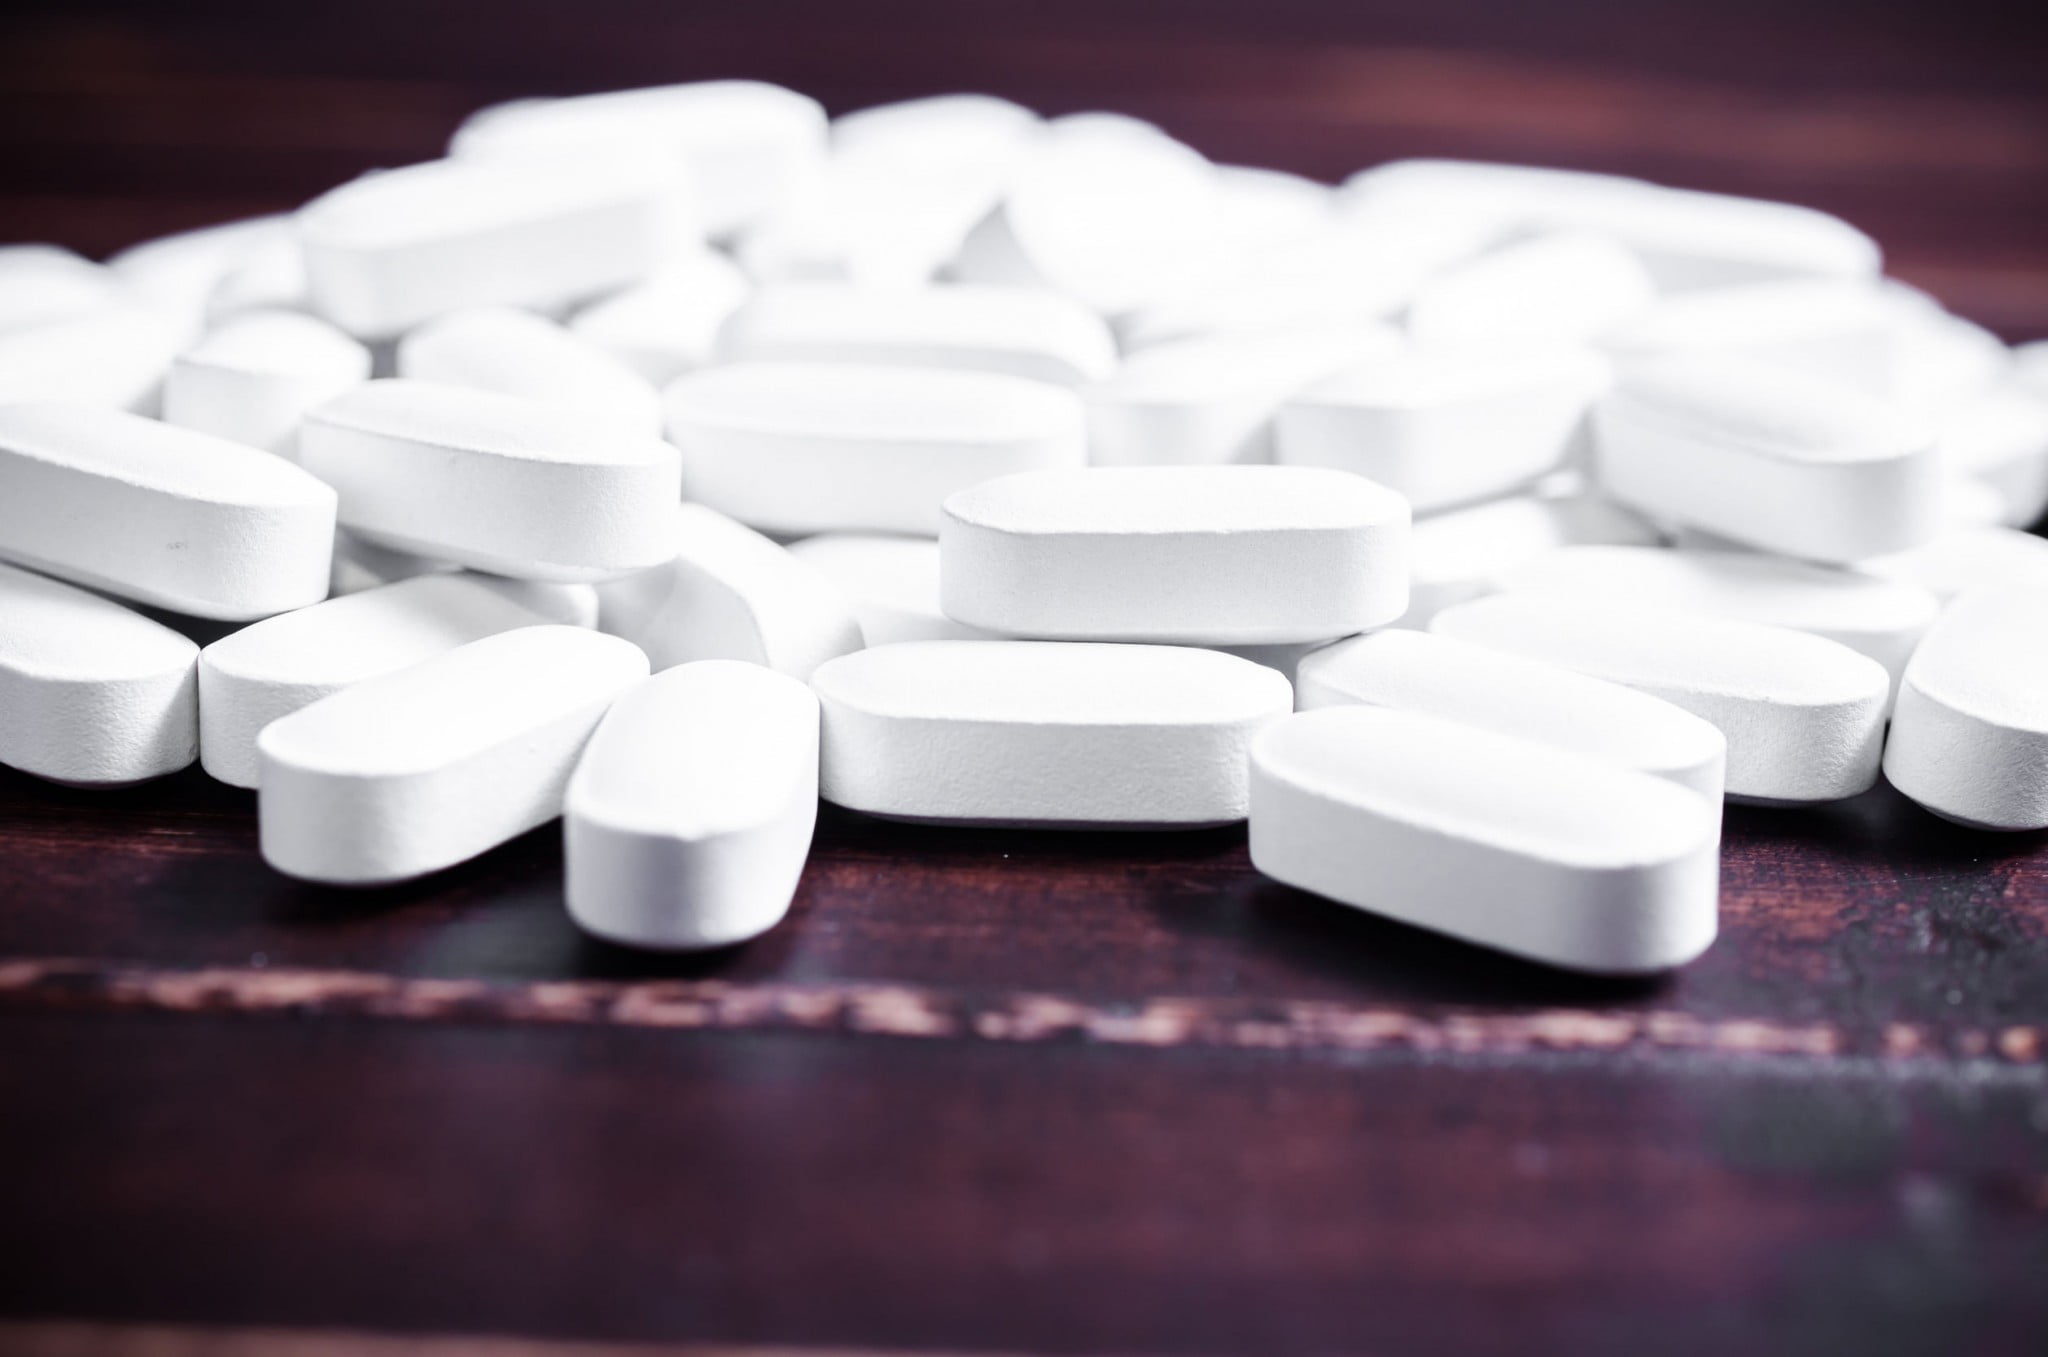 white pills - look like codeine combination OTCs